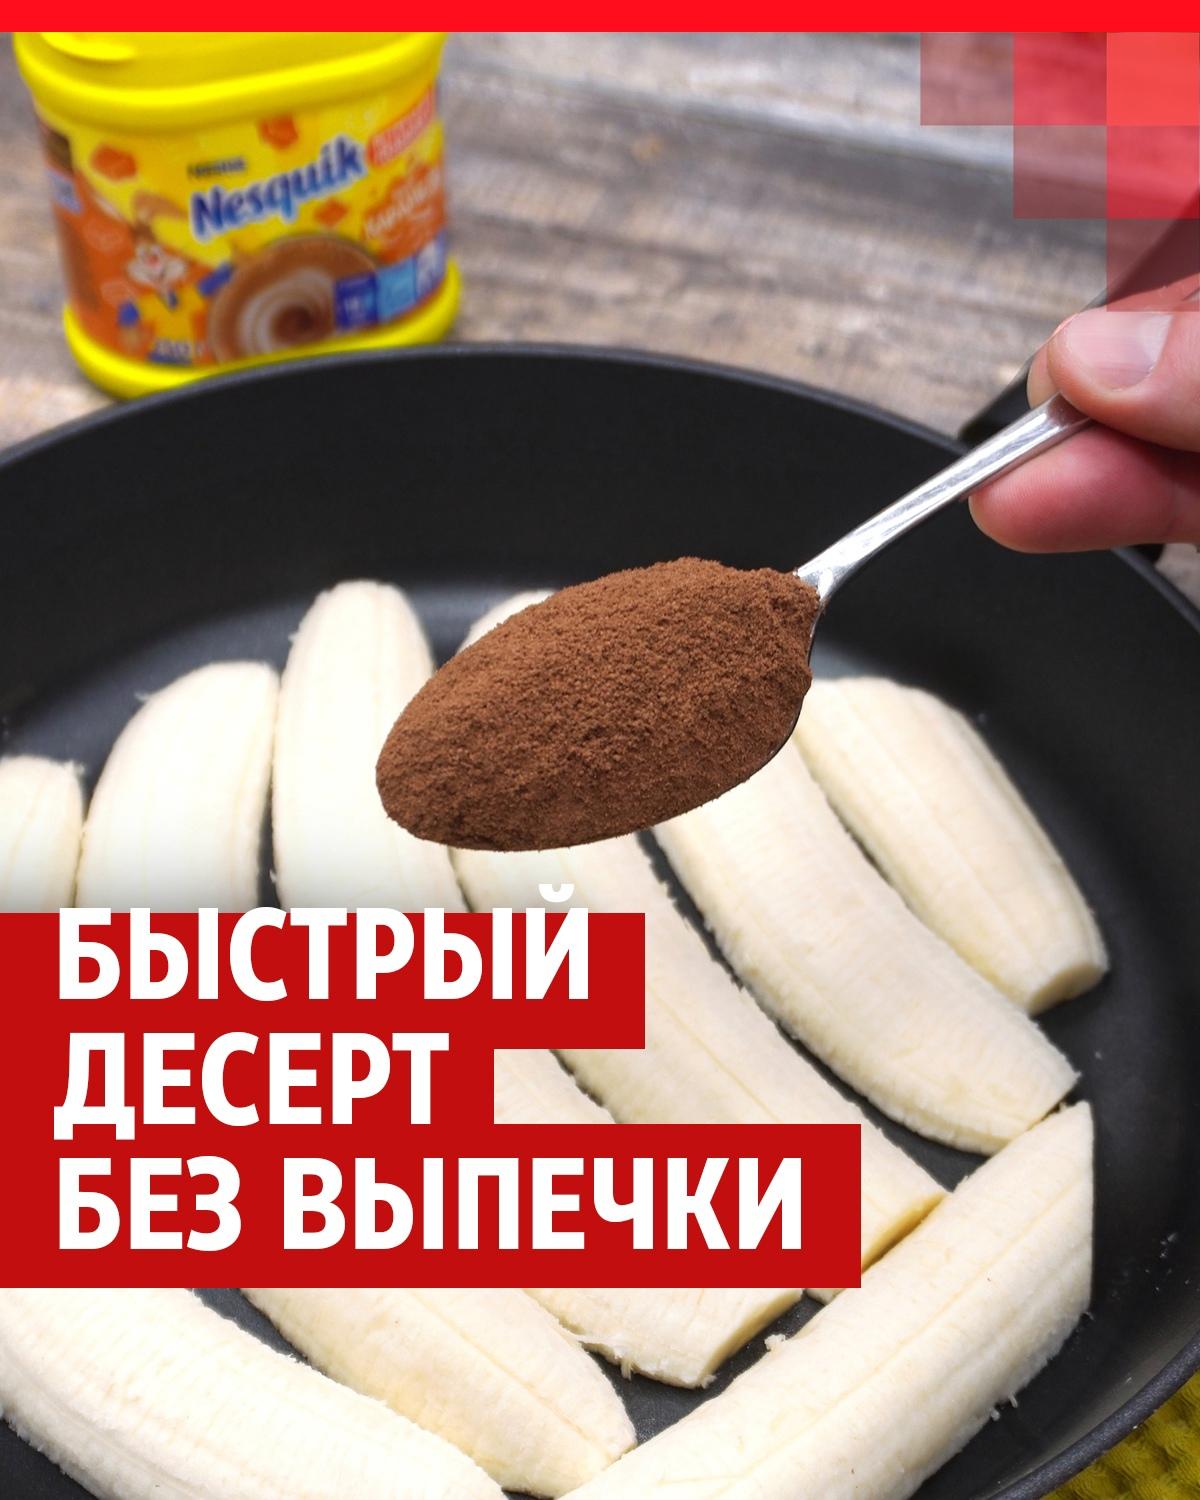 Шоколадно-банановый пирог - пошаговый рецепт с фото на webmaster-korolev.ru